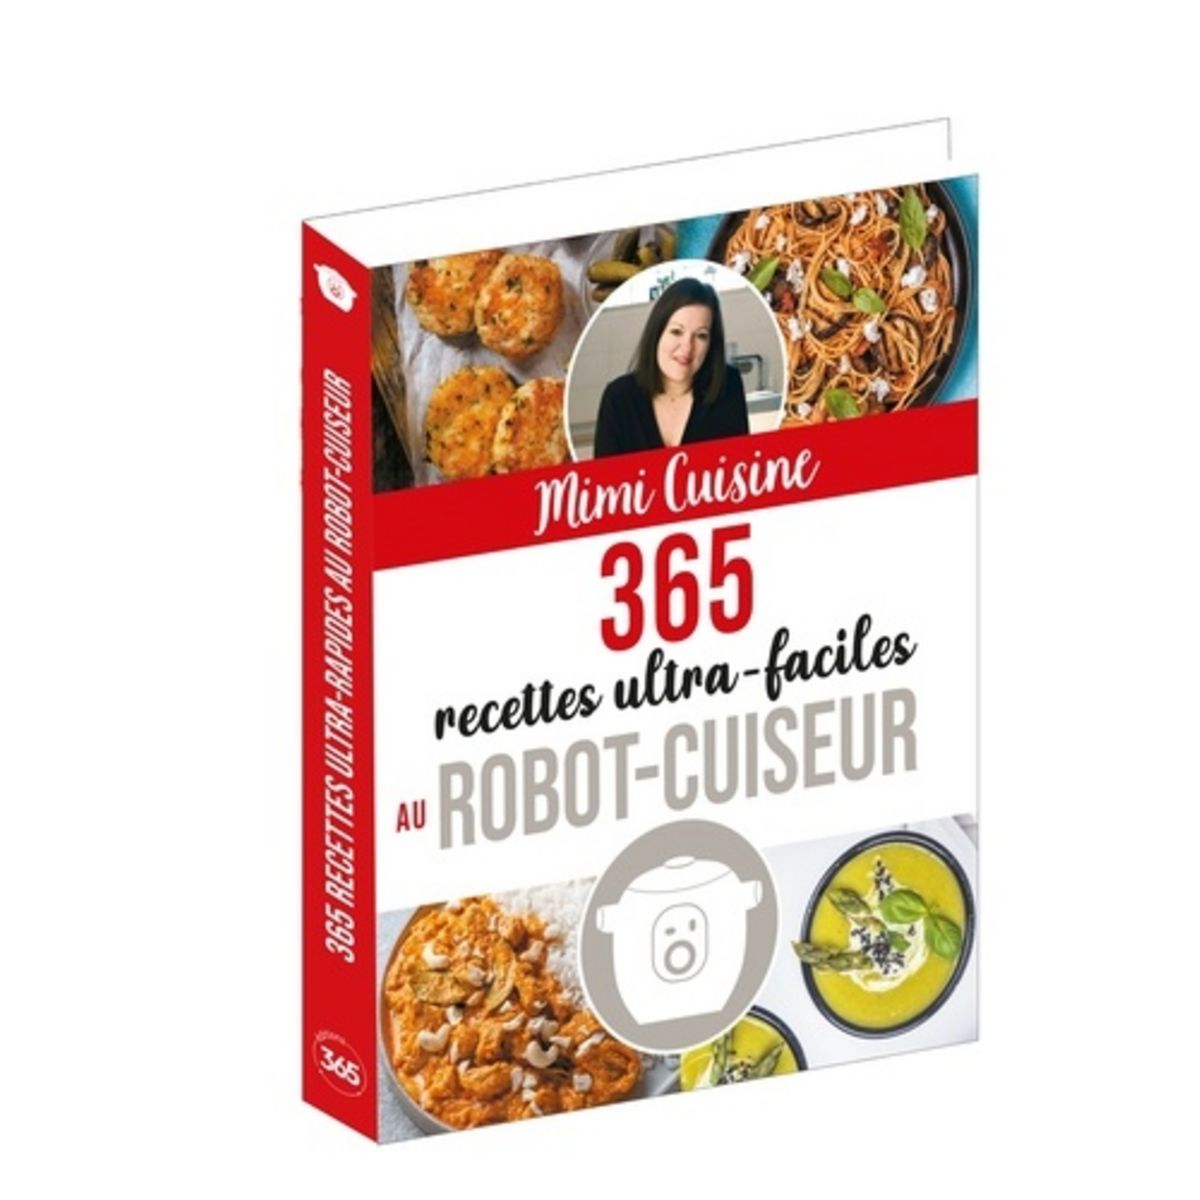  365 RECETTES ULTRA-FACILES AU ROBOT-CUISEUR, Mimi Cuisine